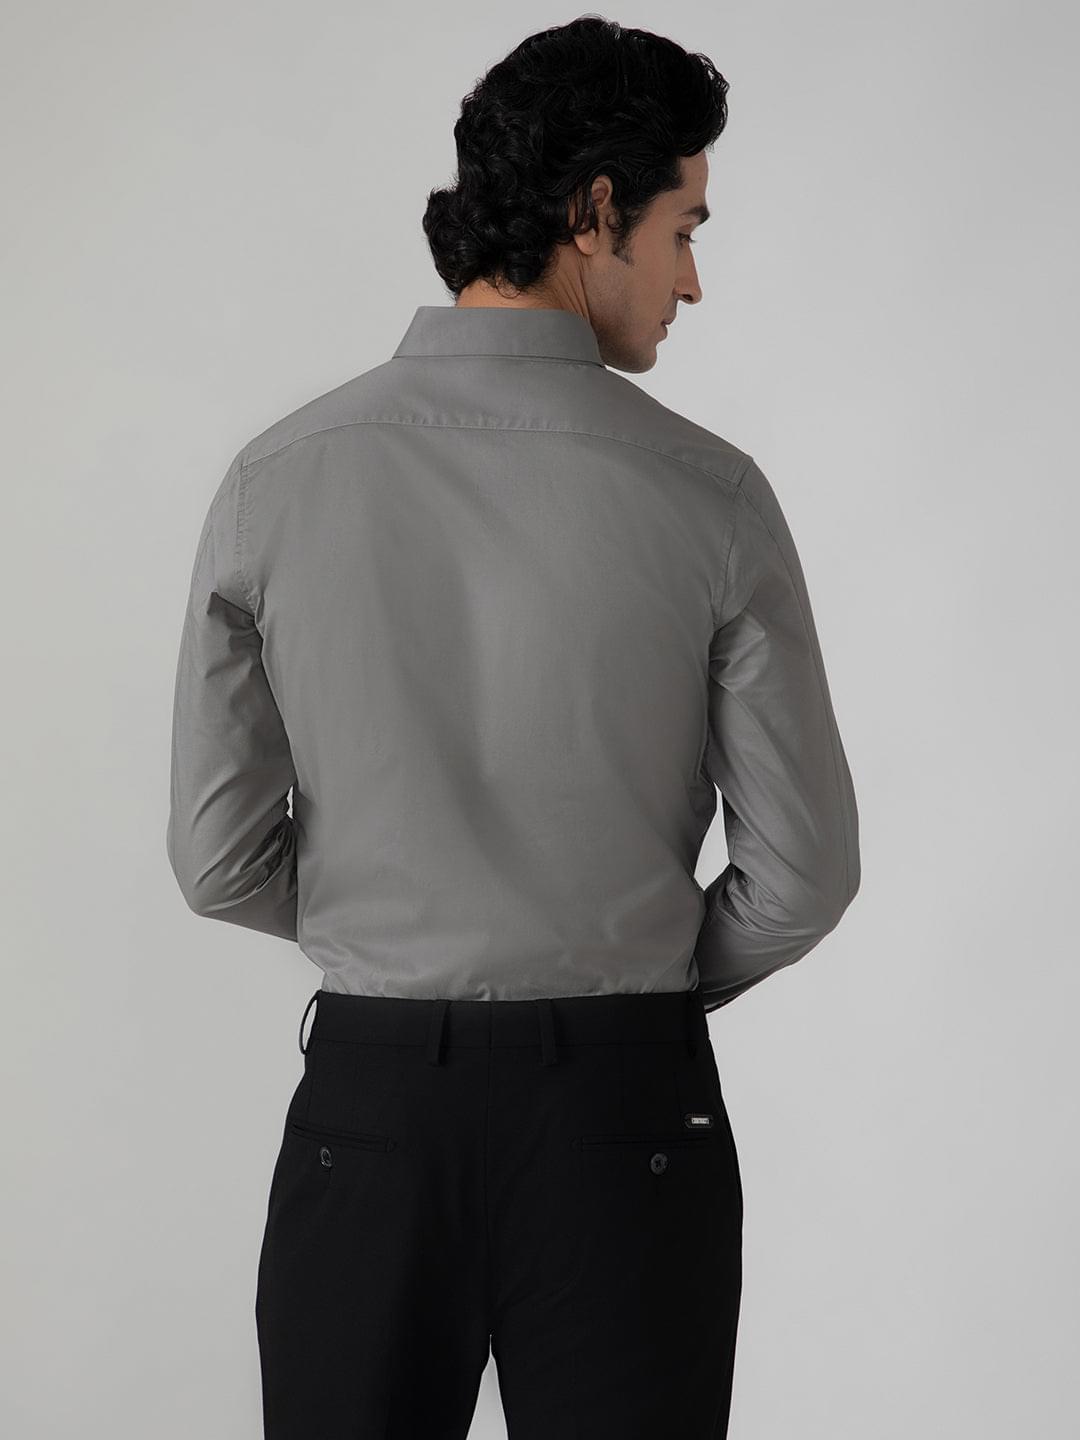 2 Way Stretch Satin Shirt in Ash Grey- Slim Fit